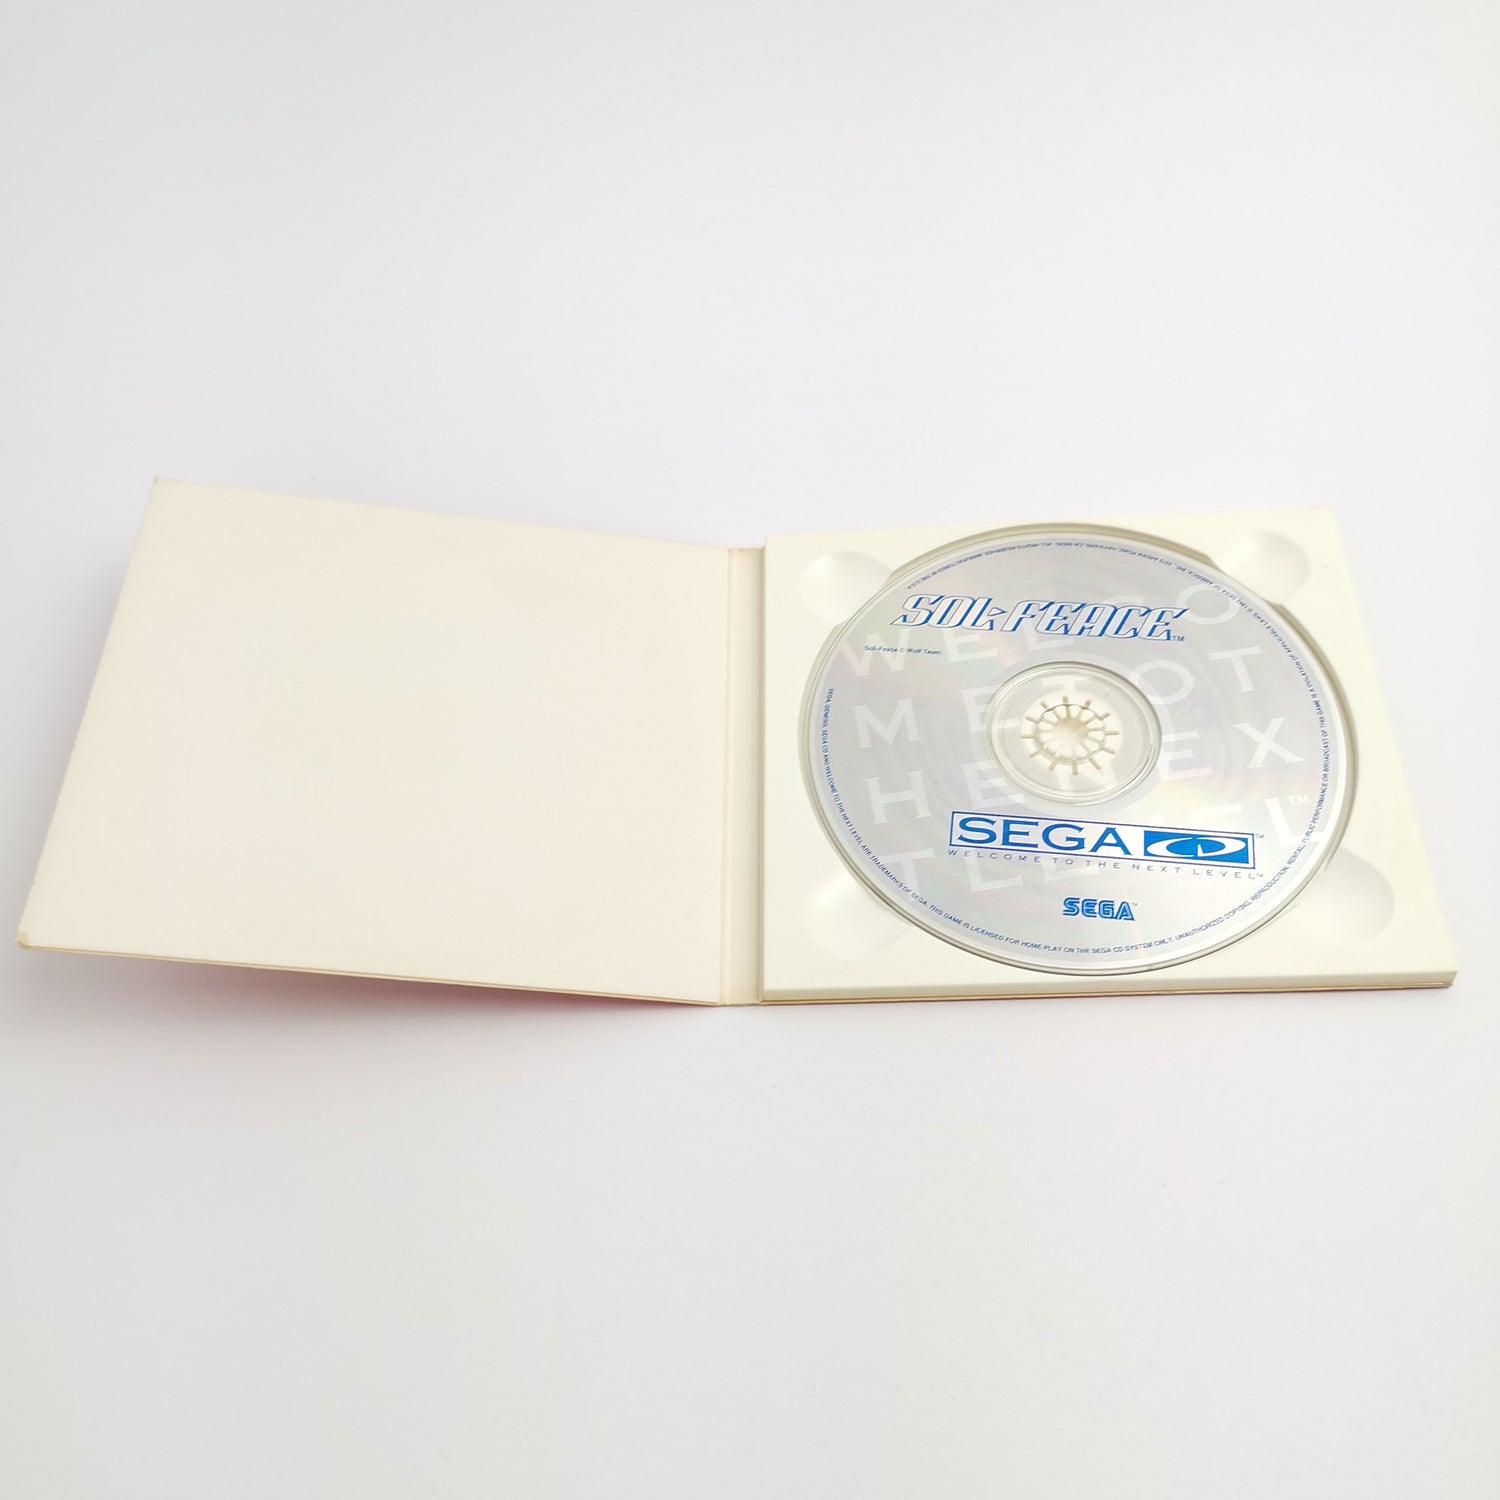 Sega Mega CD Game (Genesis CD) 